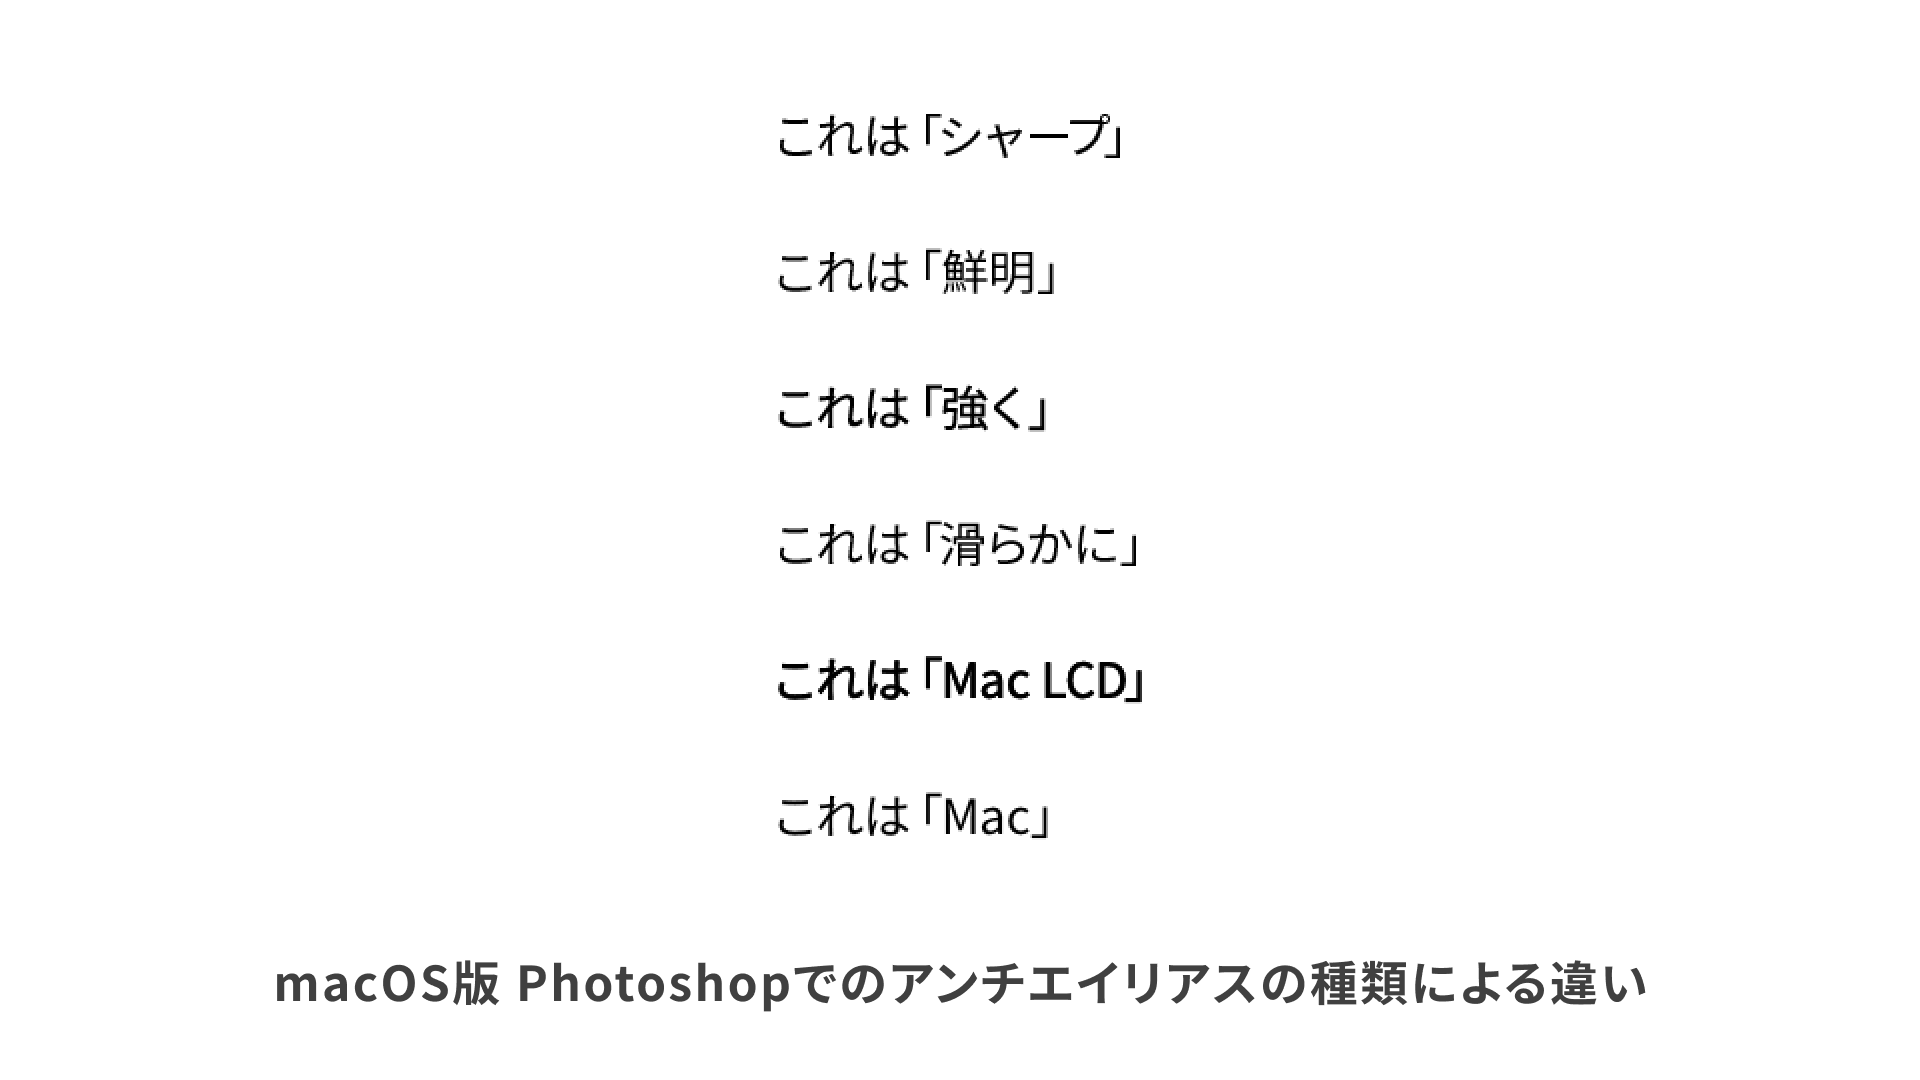 Photoshopでのアンチエイリアスが違うと文字の太さが違ってみえる。MacLCDは太く見える